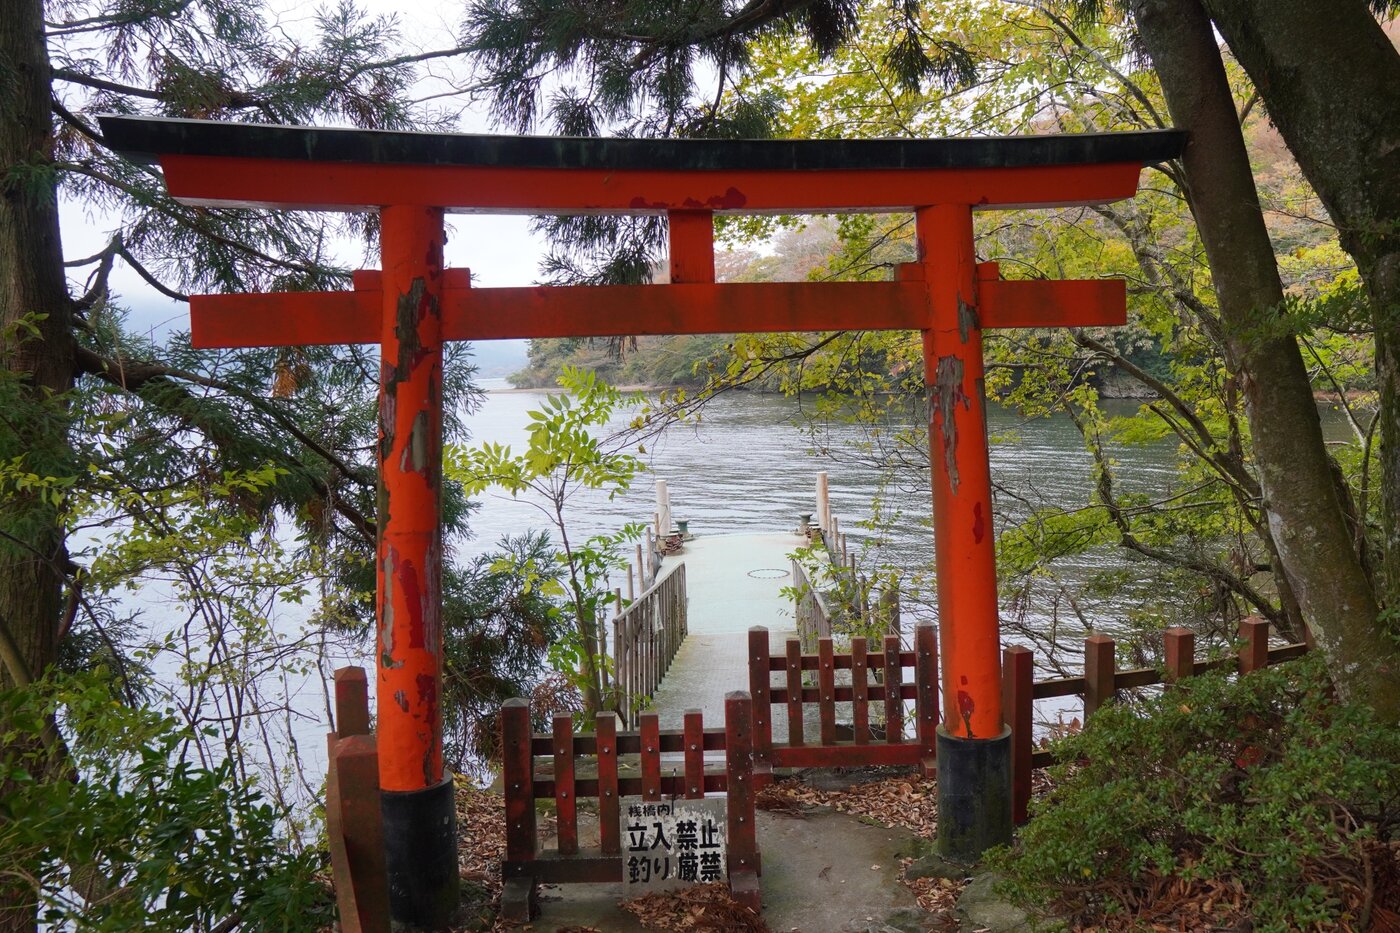 Muốn thoát ế hãy đến đền Kuzuryu Hongu linh thiêng